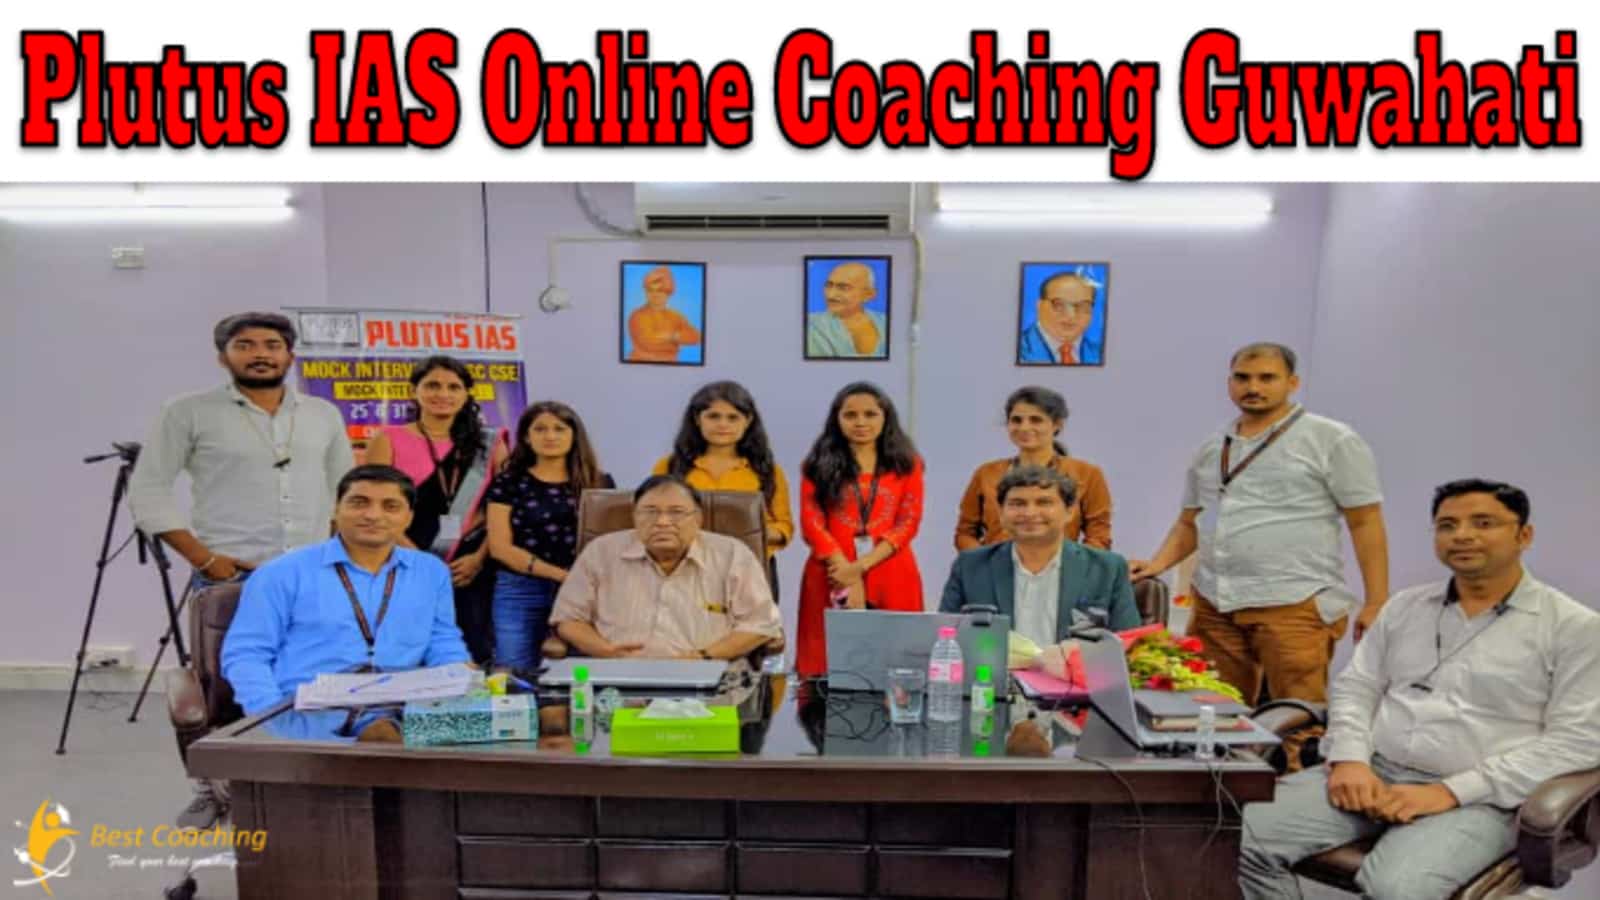 Plutus IAS Online Coaching Guwahati